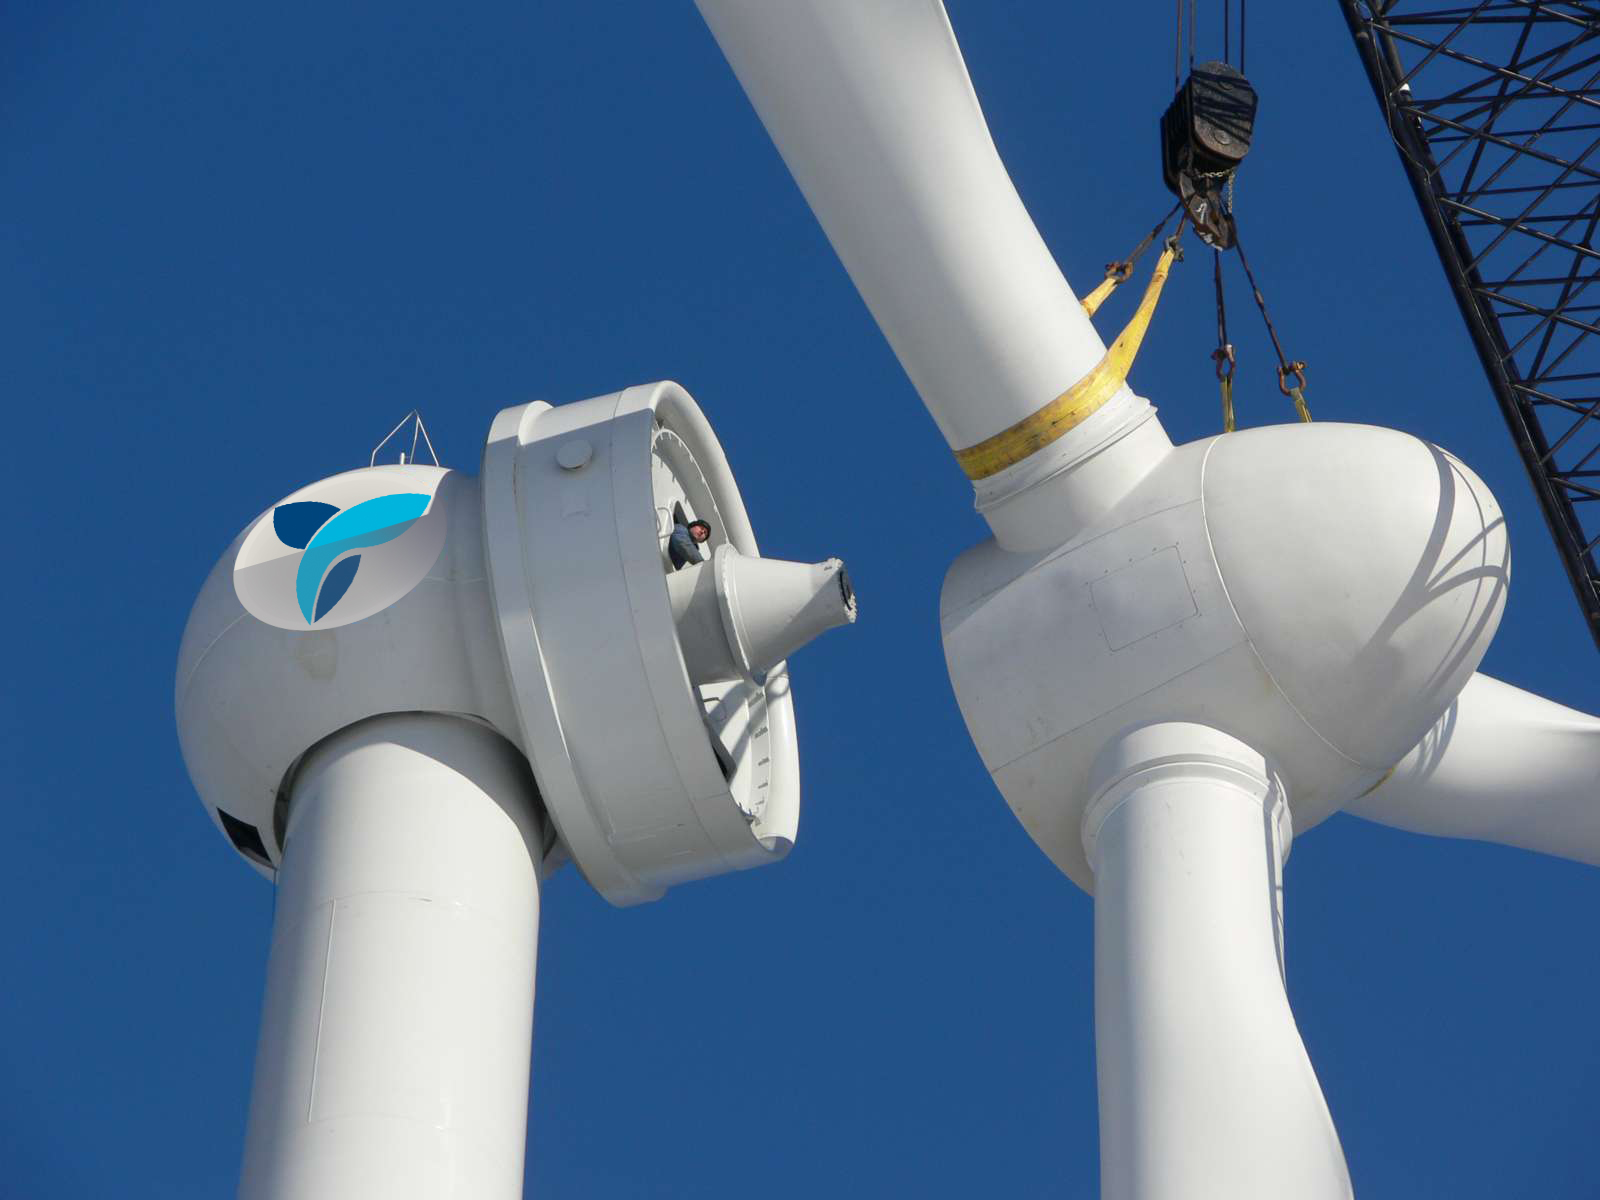 Eólica: Arranca la instalación de los aerogeneradores del parque eólico de Eozen